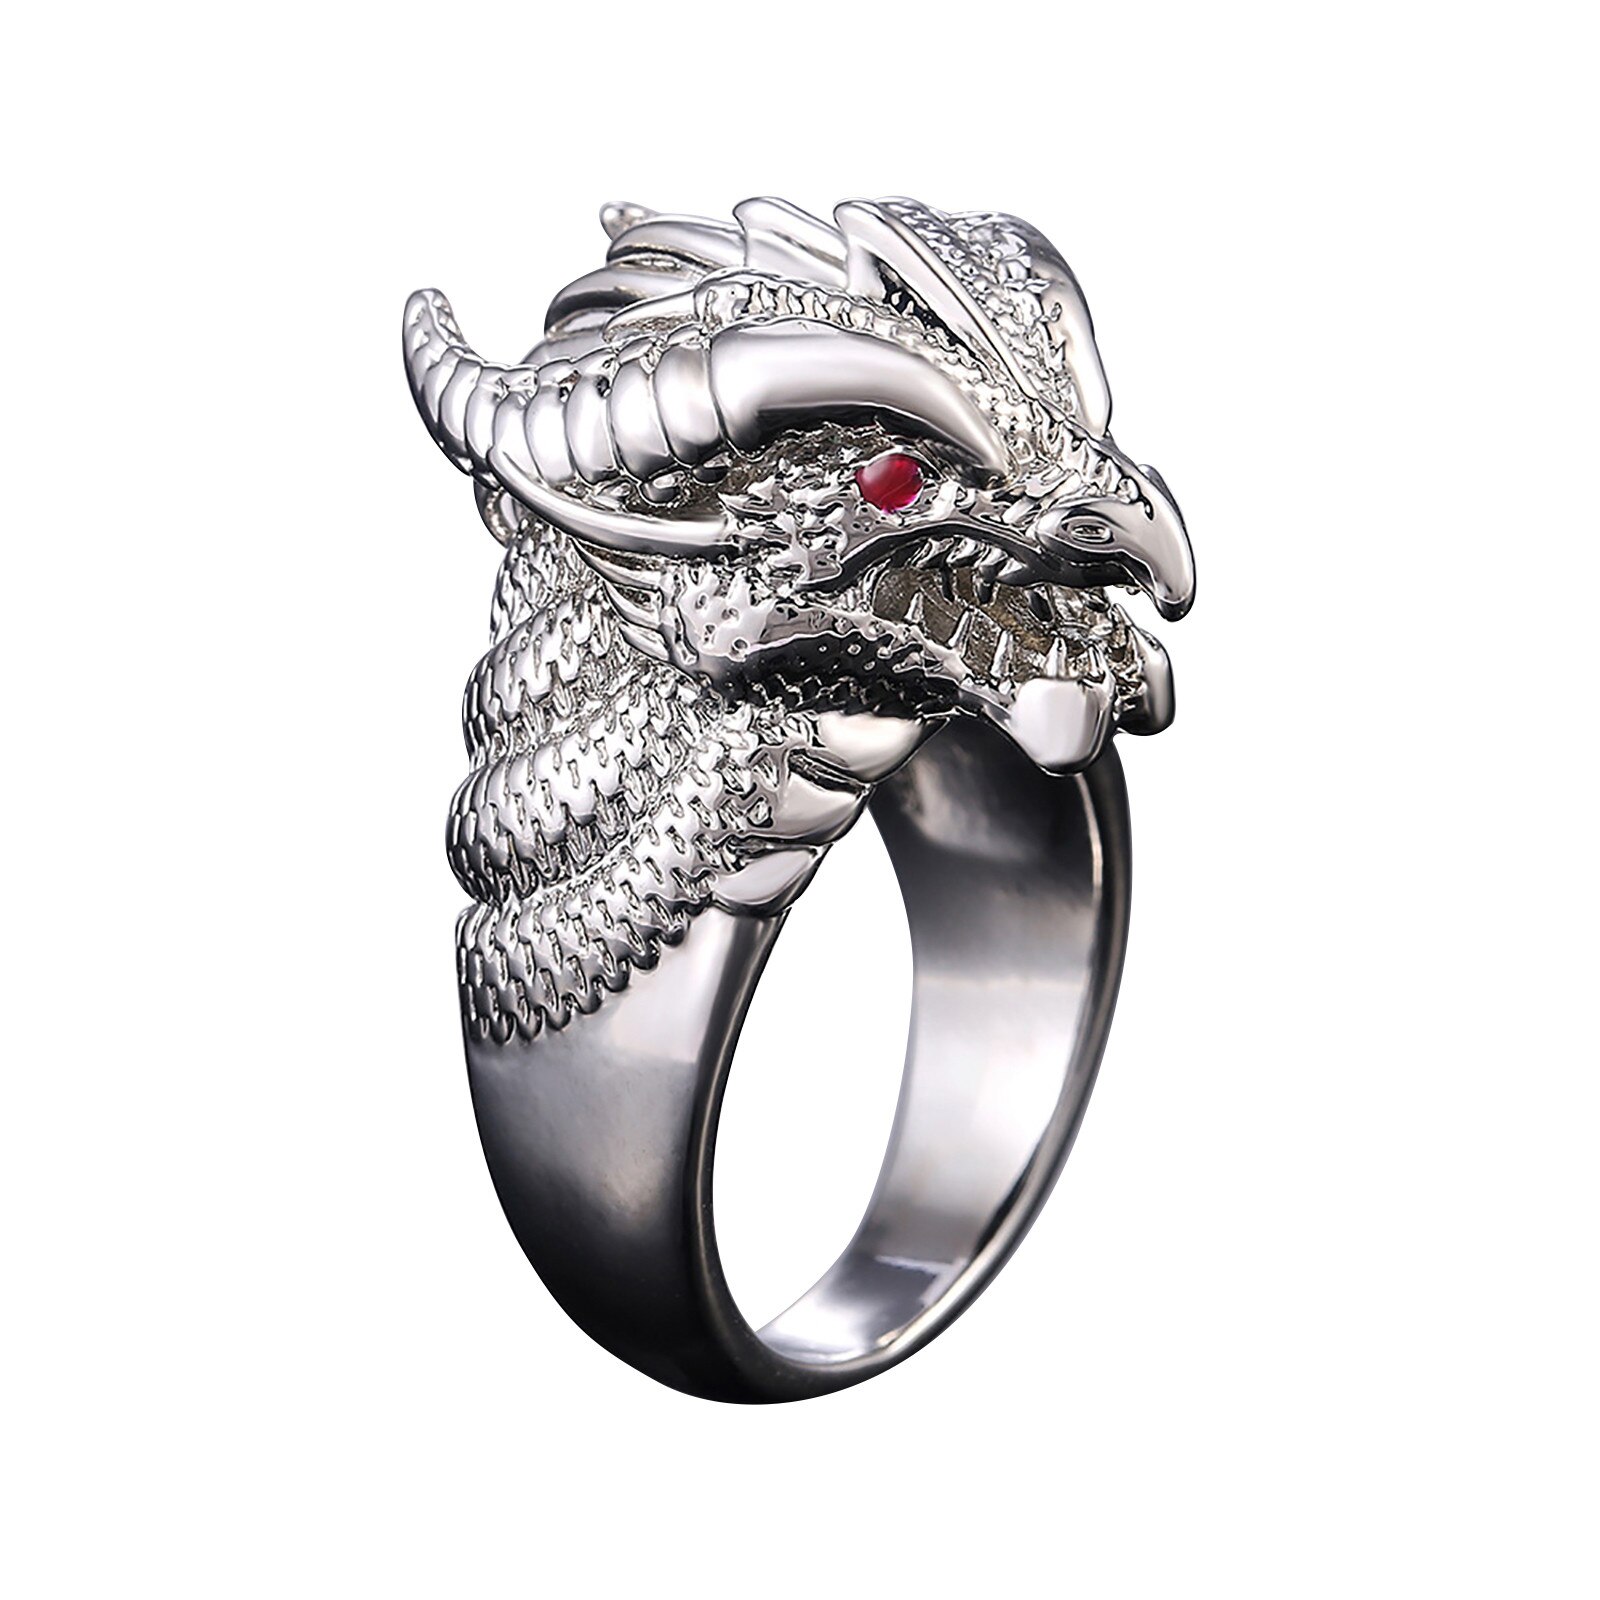 Mode Retro Persoonlijkheid Overheersend Prachtige Toonaangevende Heren Ring Legering Sieraden Ring Size6-10 Vinger Ringen Chic